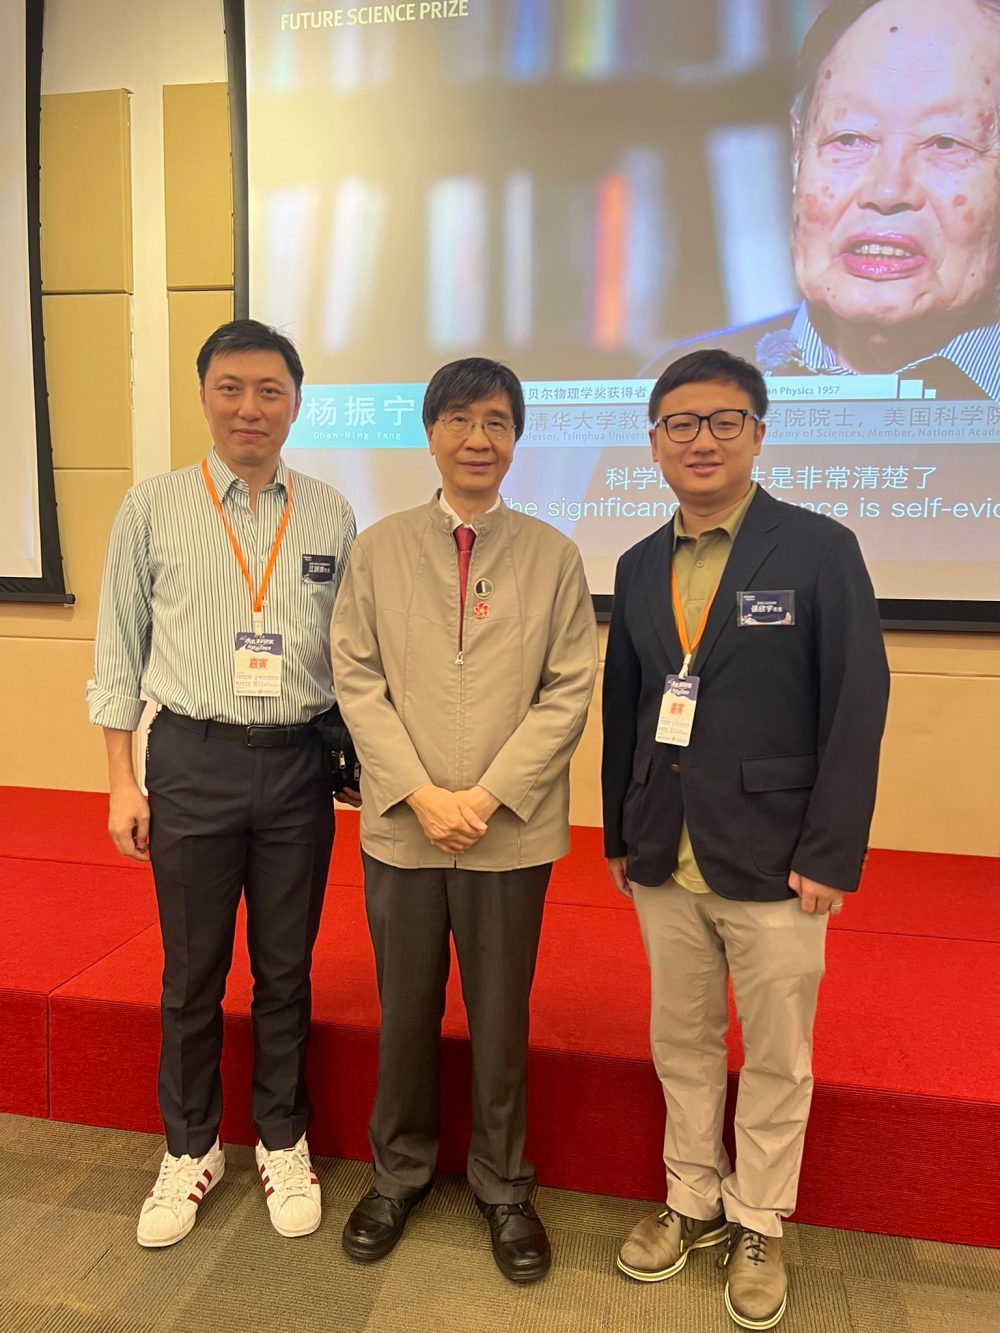 江颂涛先生在未来科学奖活动中举办了手工望远镜制作课程